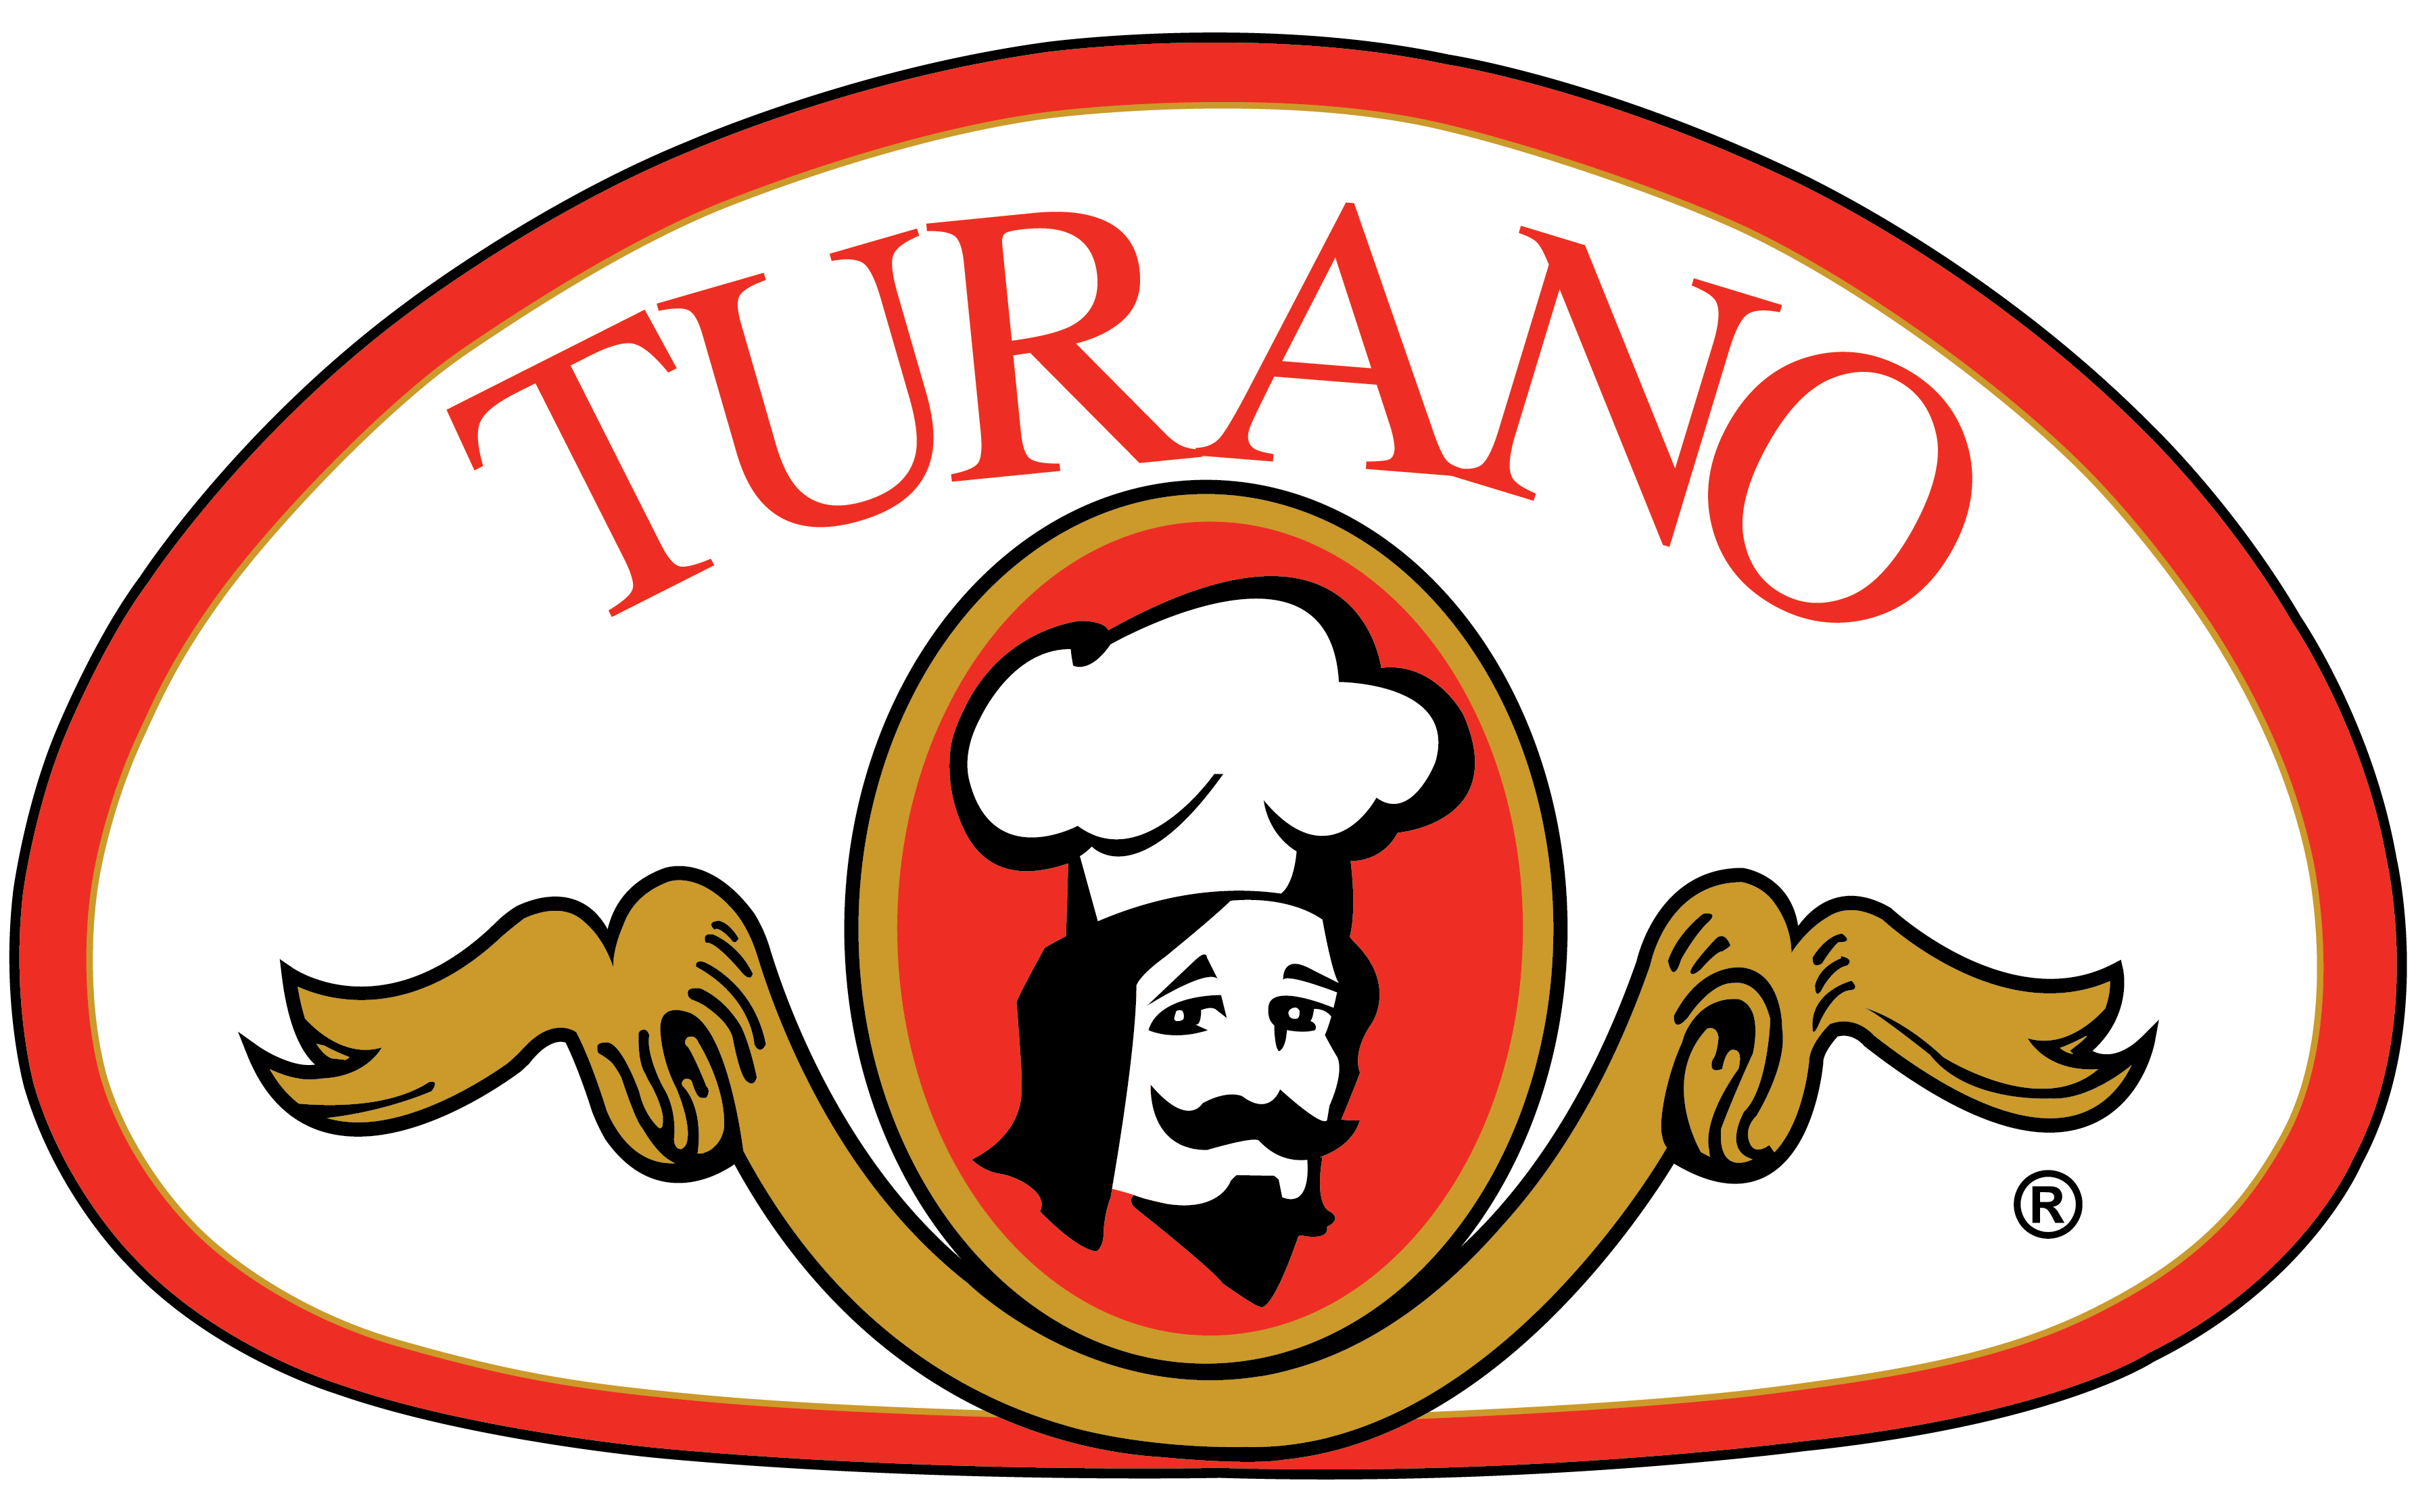 Turano Baking Co